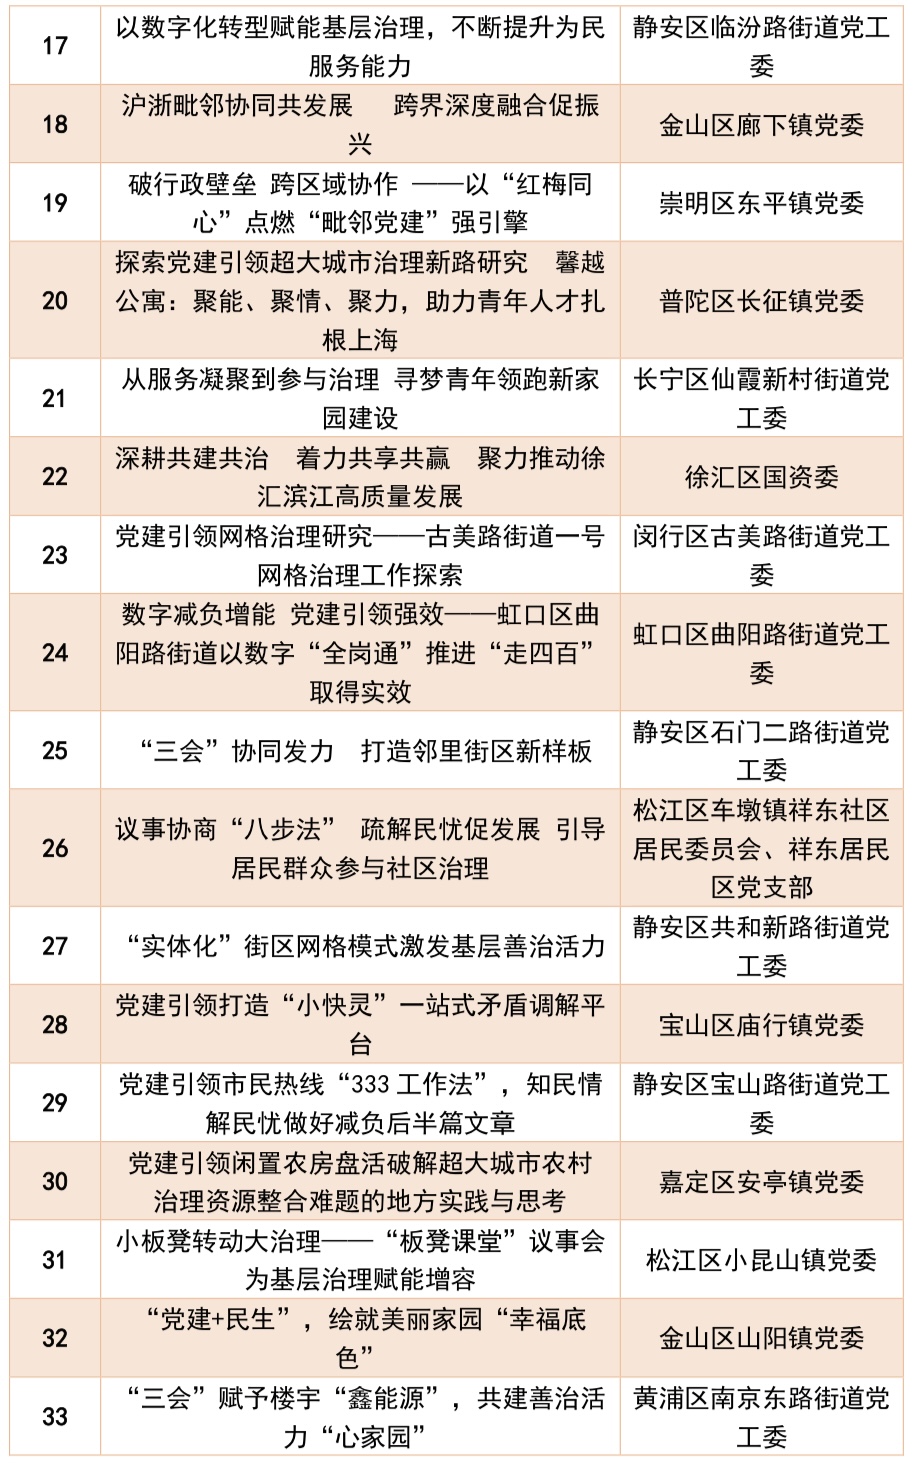 第二届上海城市基层党建创新案例征集活动推荐案例名单发布